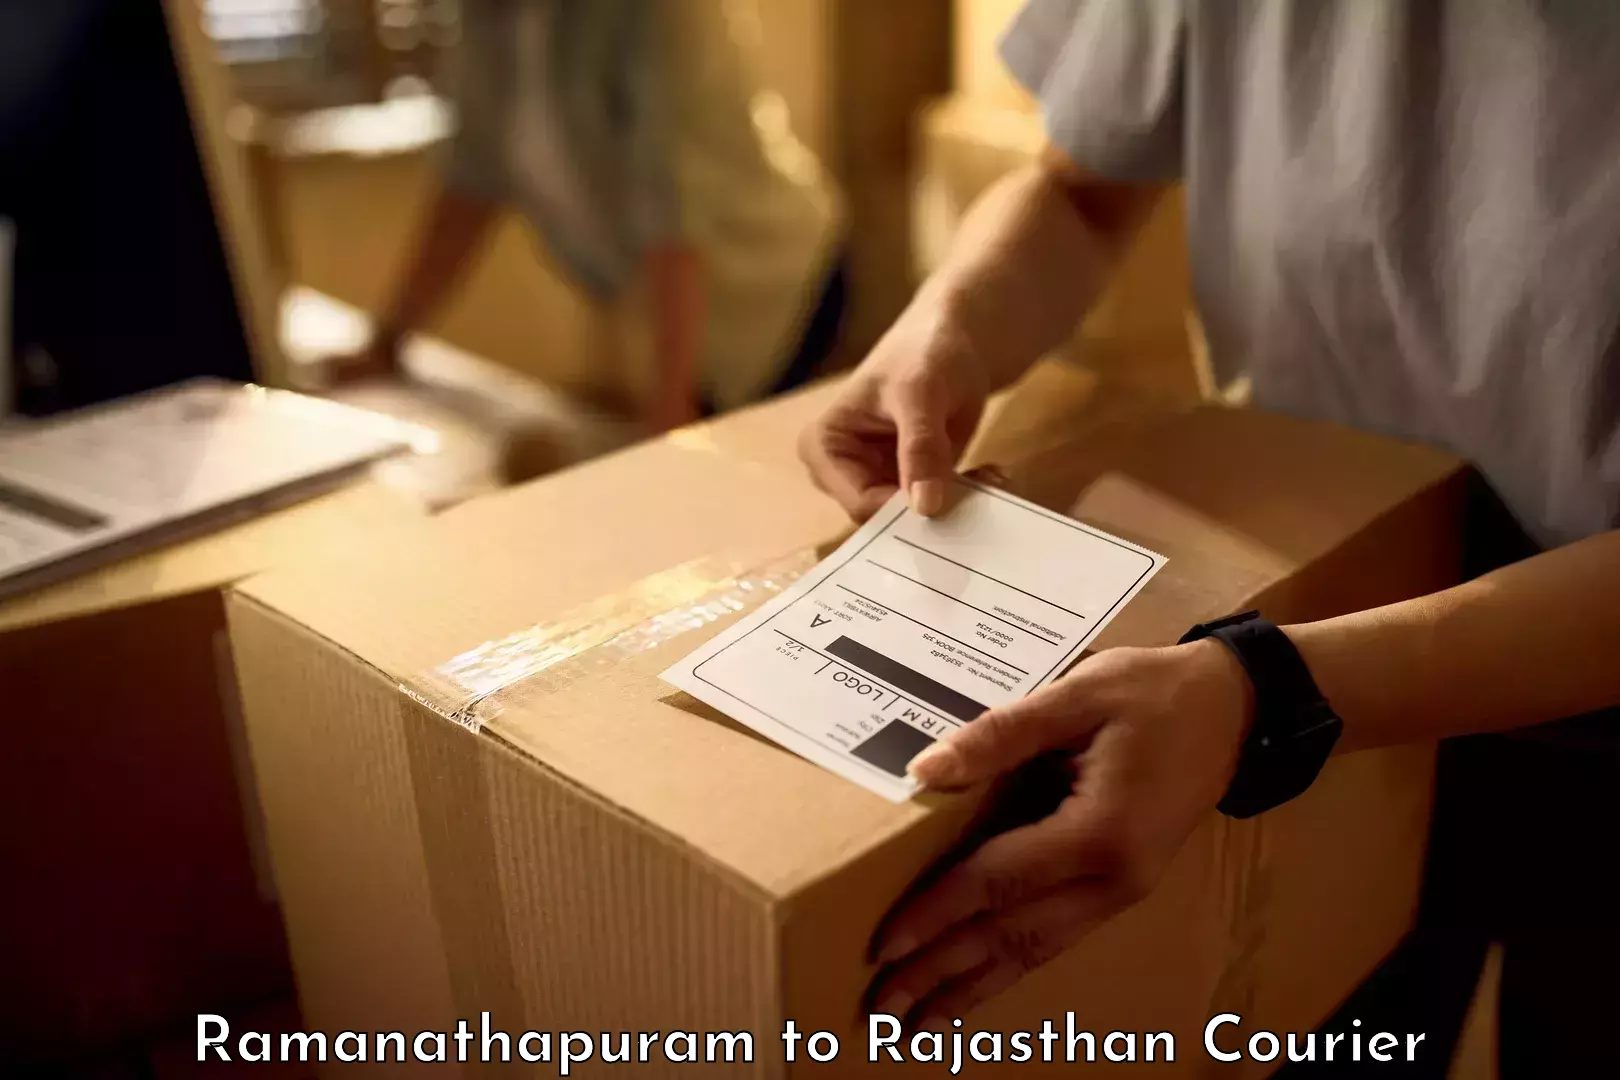 Outsize baggage transport in Ramanathapuram to Rajasthan